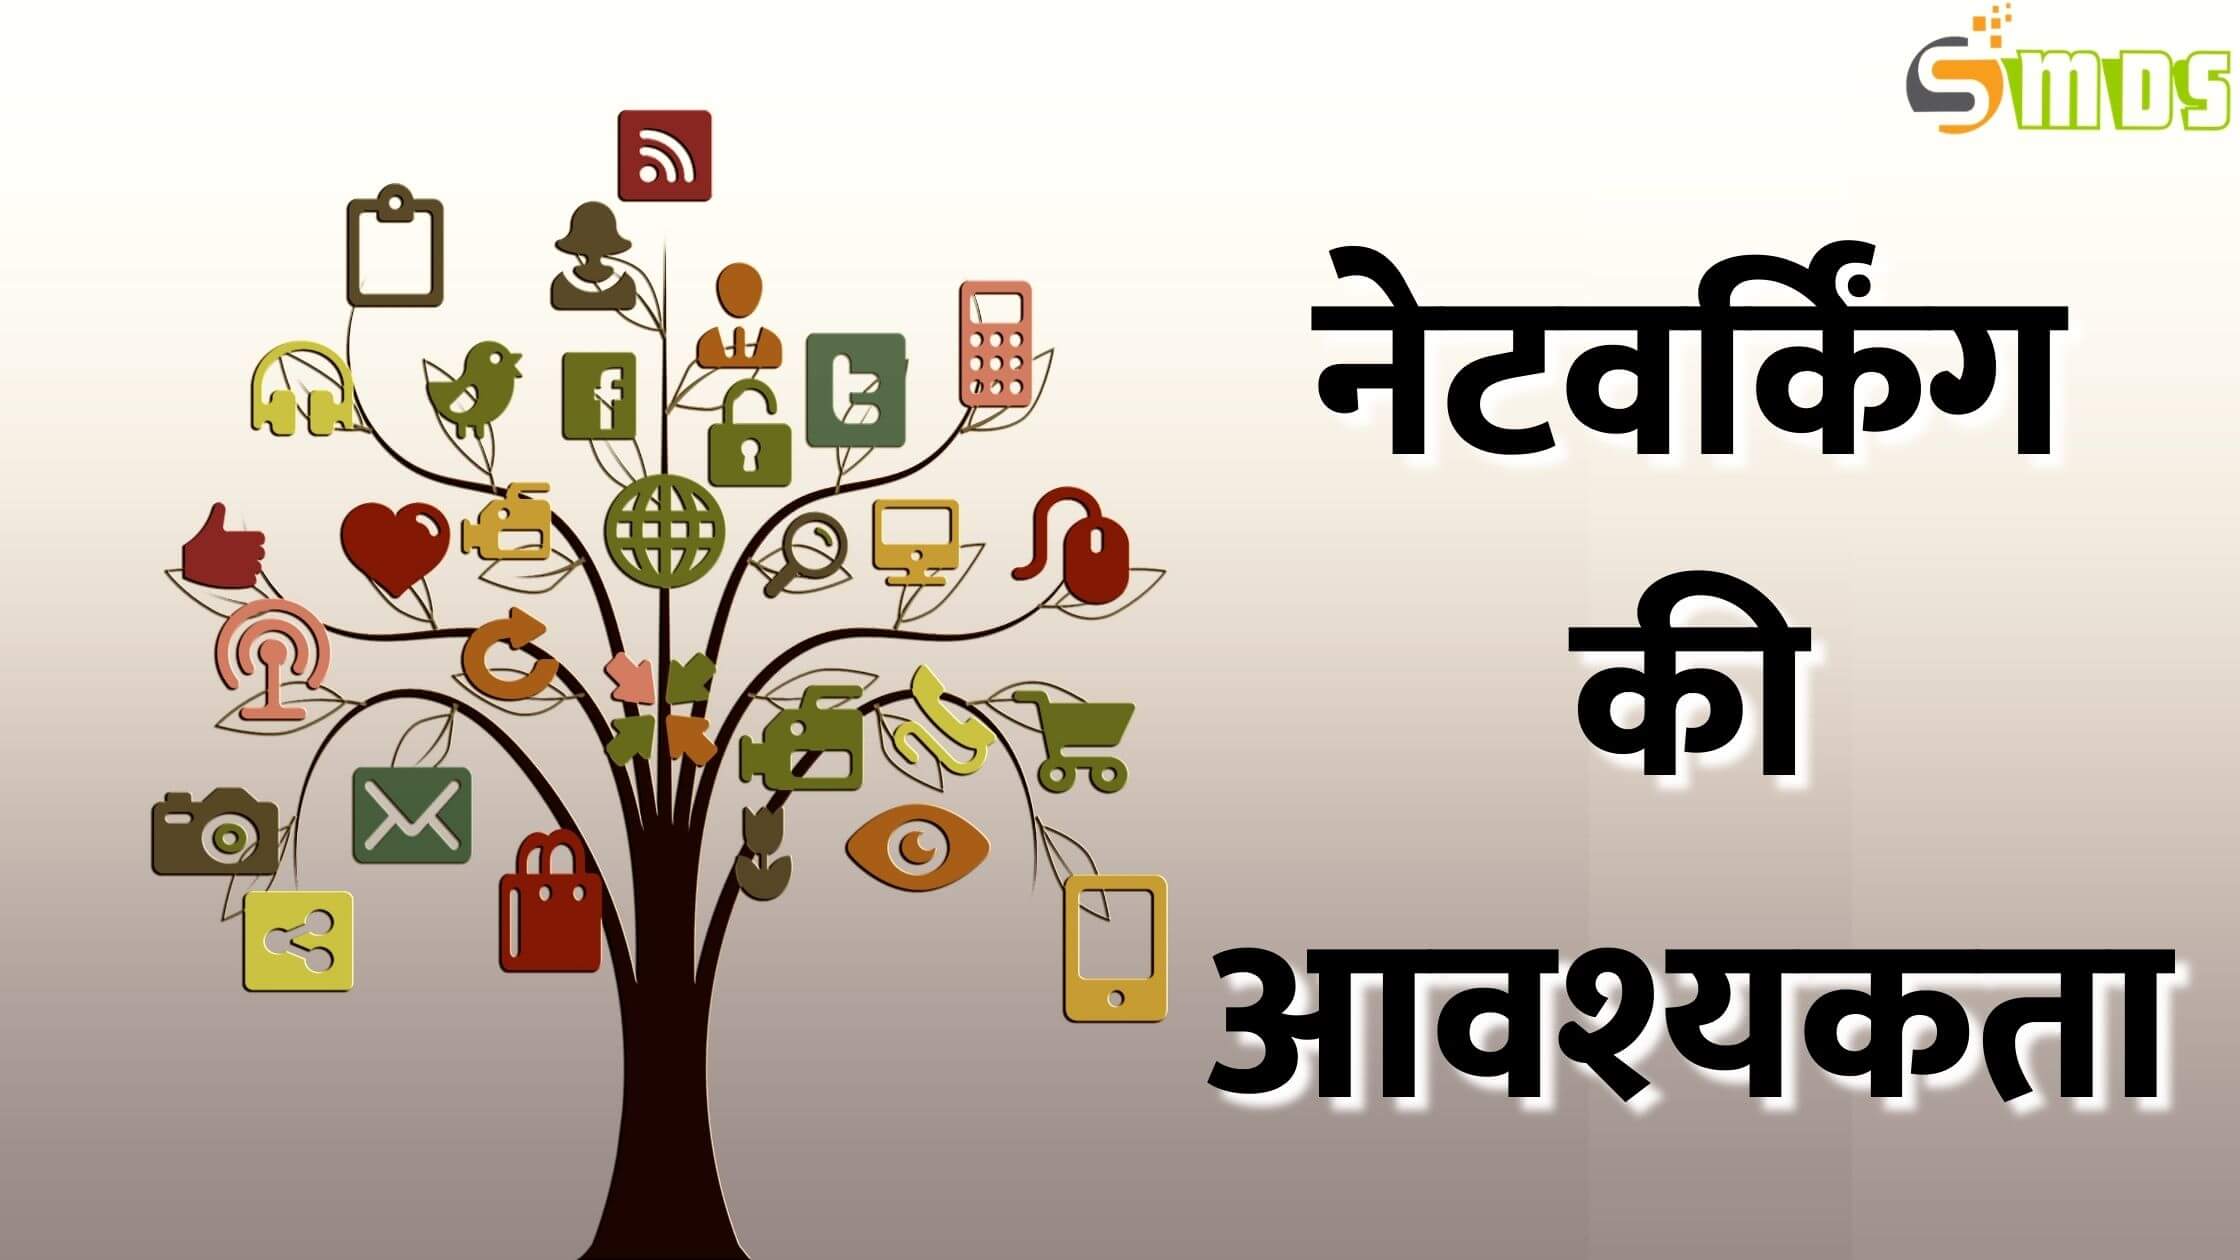 नेटवर्क क्या है - What is Network in Hindi, नेटवर्क किसे कहते हैं, नेटवर्क की परिभाषा, नेटवर्क के प्रकार - Types of Network in Hindi, नेटवर्किंग की आवश्यकता